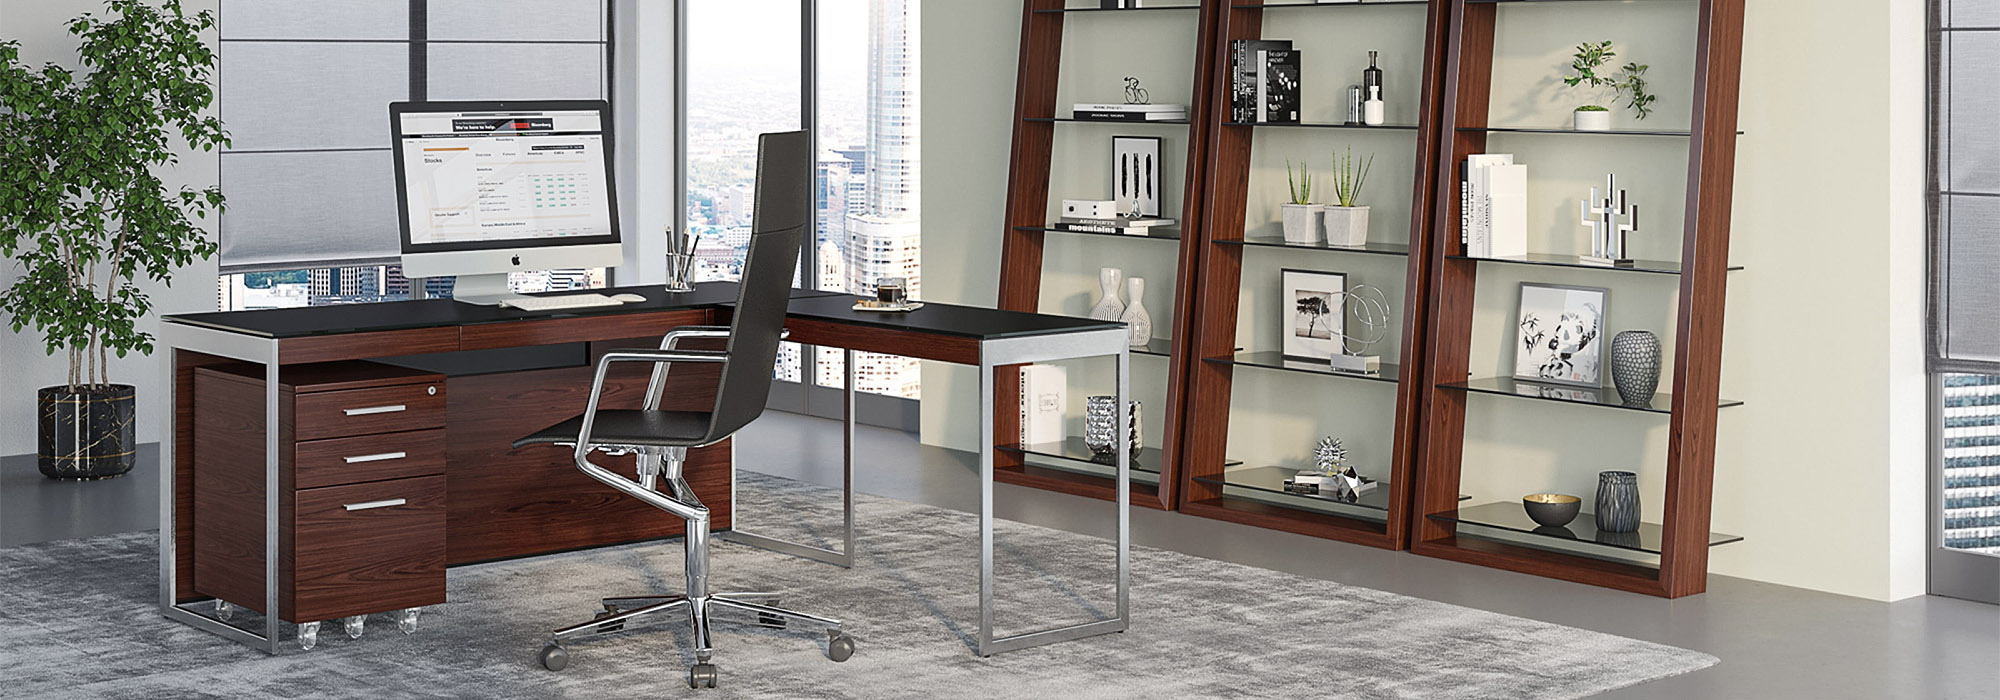 BDI Office Furniture